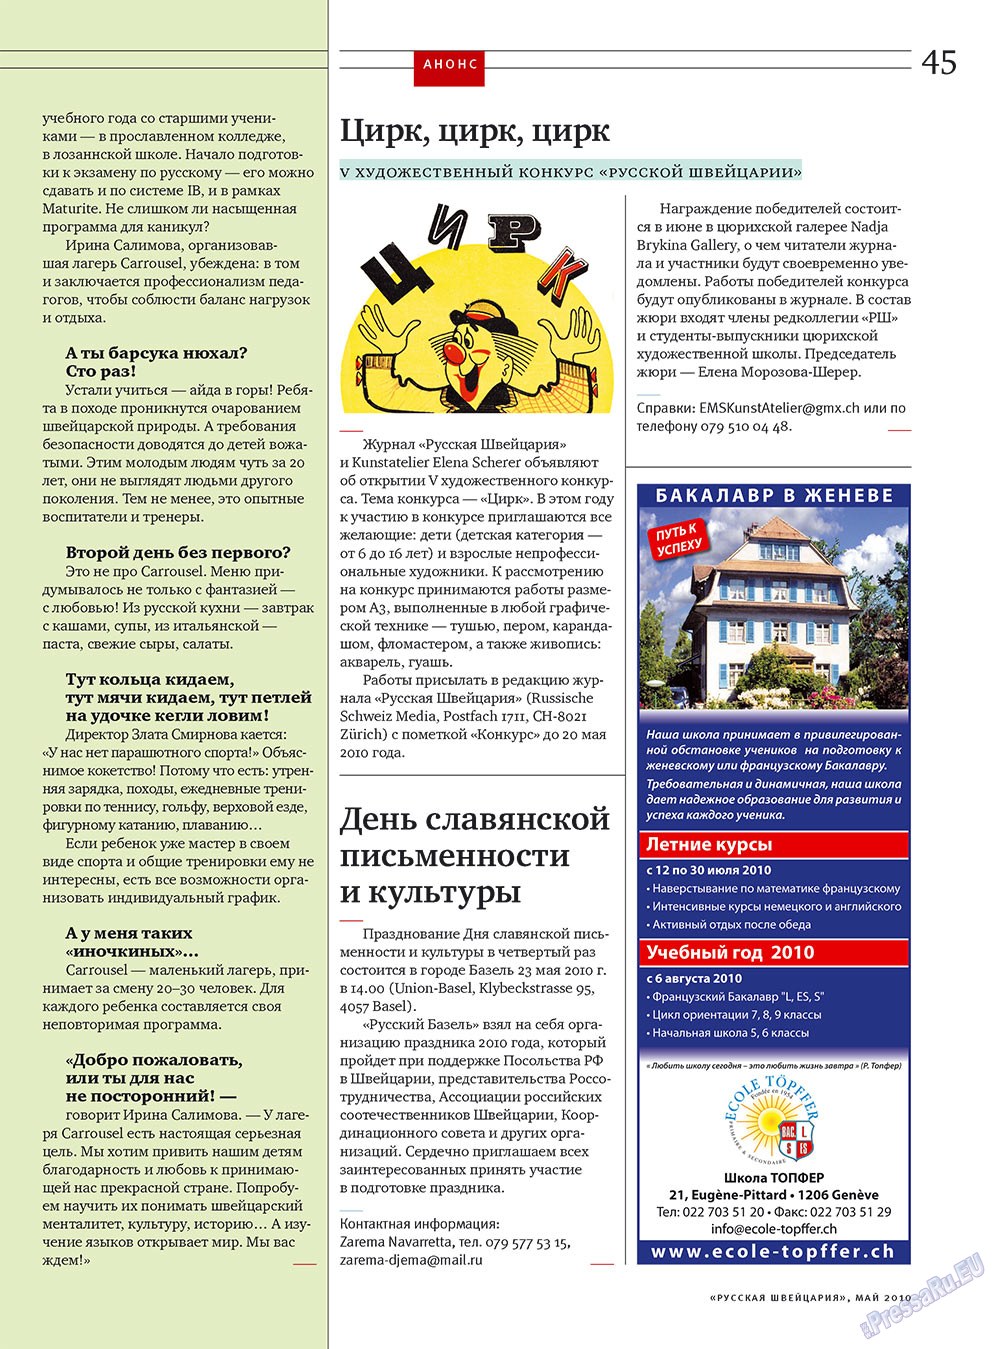 Русская Швейцария, журнал. 2010 №4 стр.45